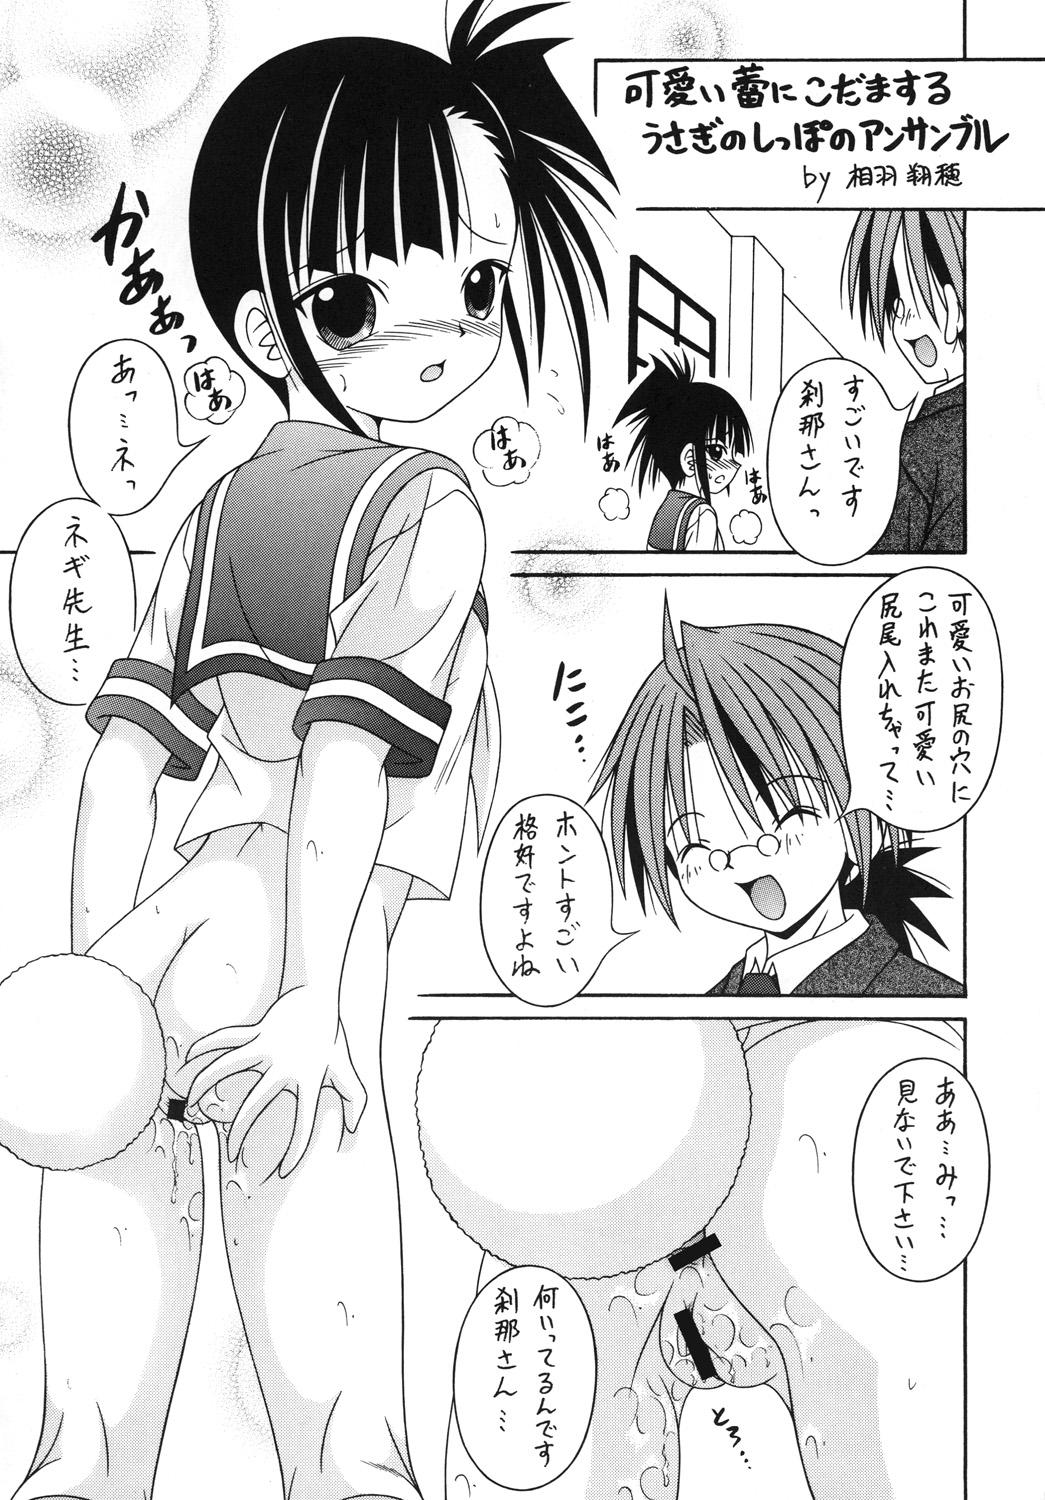 Webcam Negimax! 5 - Mahou sensei negima Ladyboy - Page 6